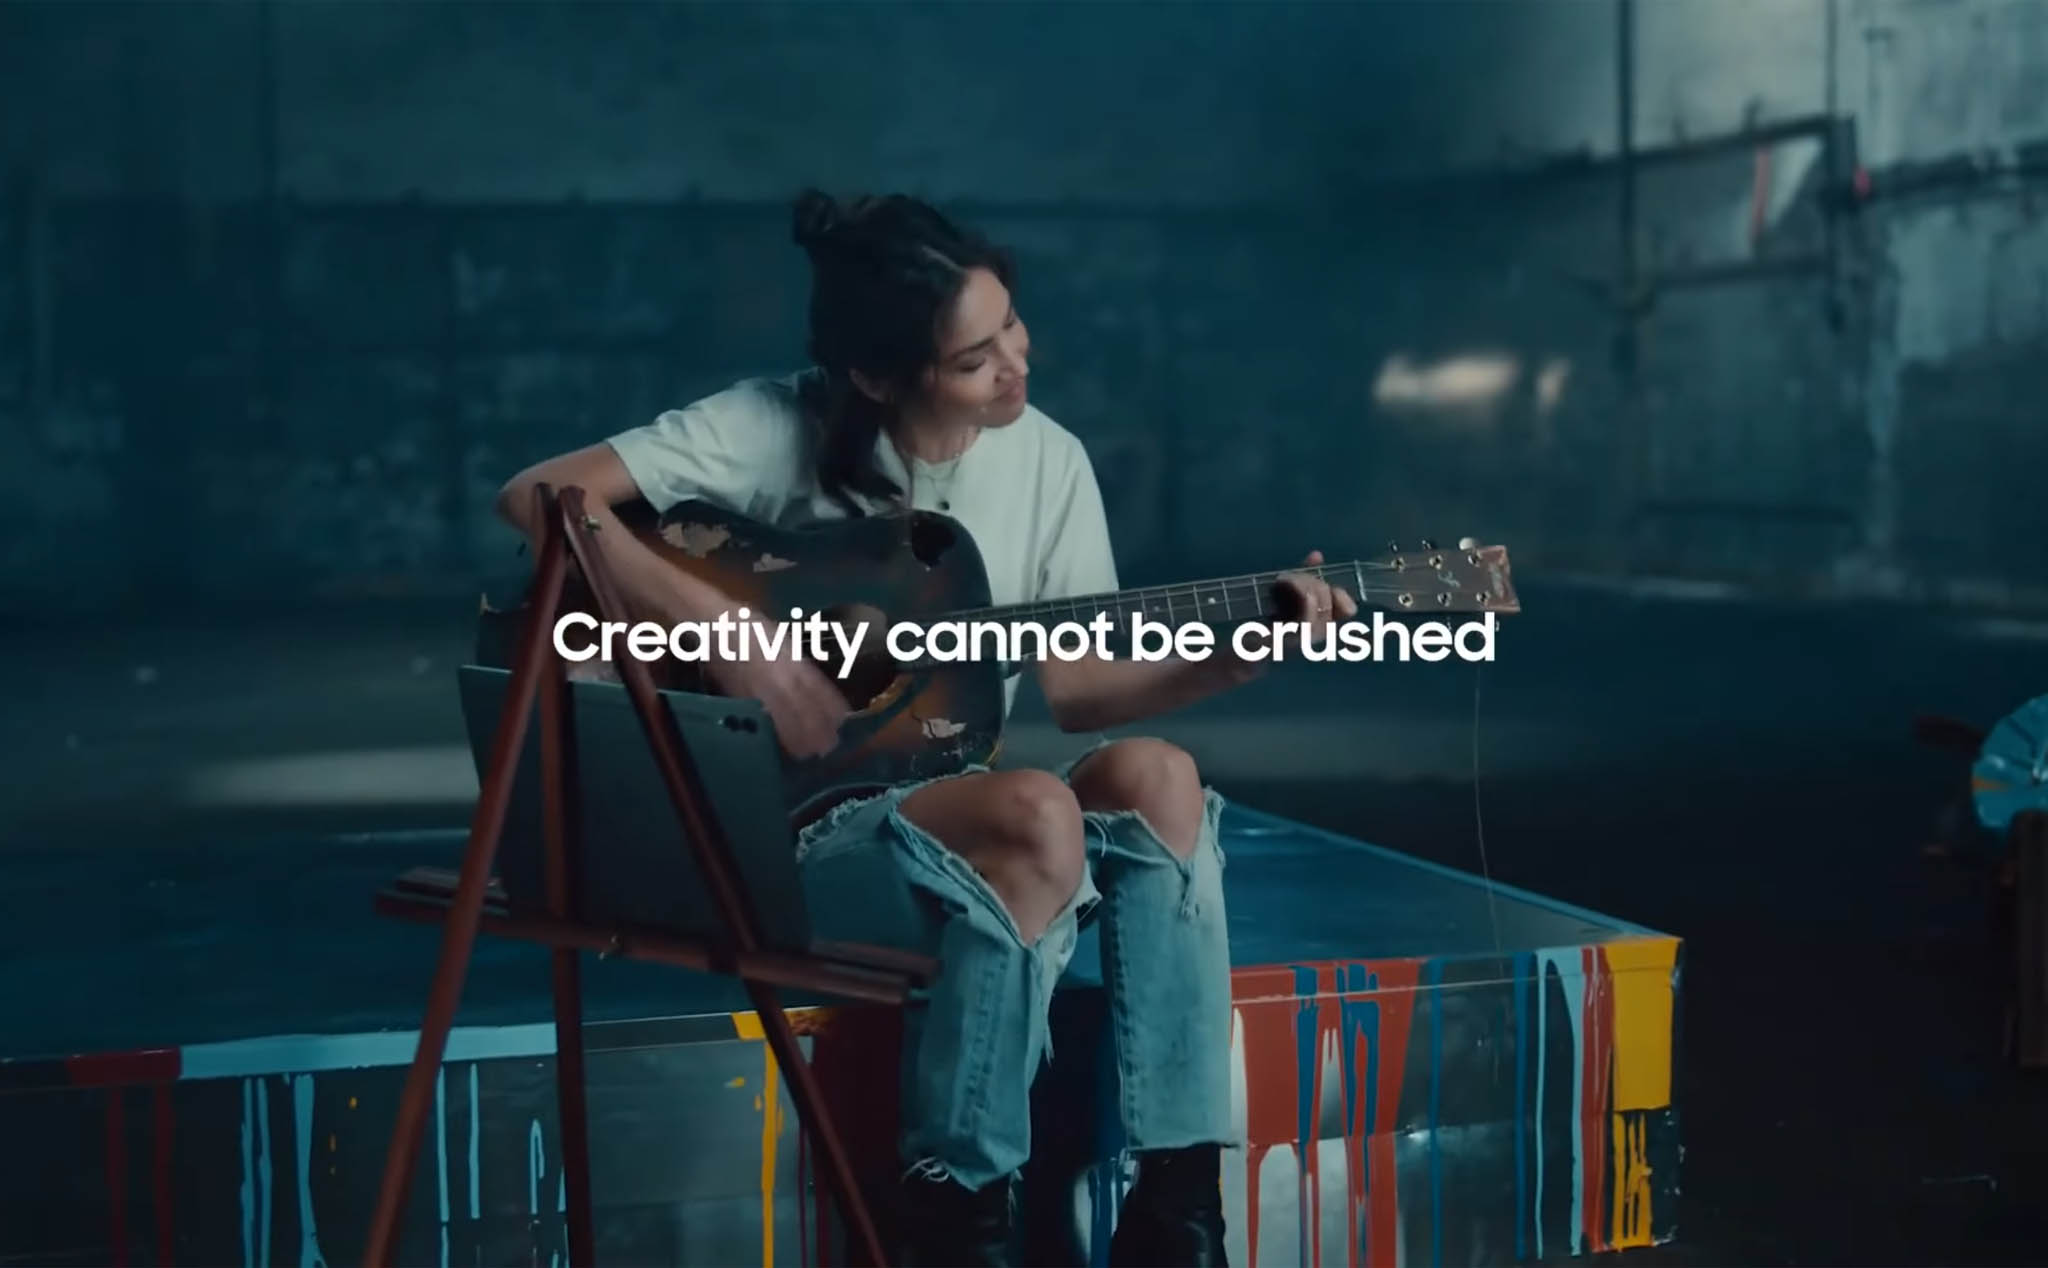 Samsung tiếp tục cà khịa Apple trong quảng cáo mới: "Không thể phá hoại sự sáng tạo"